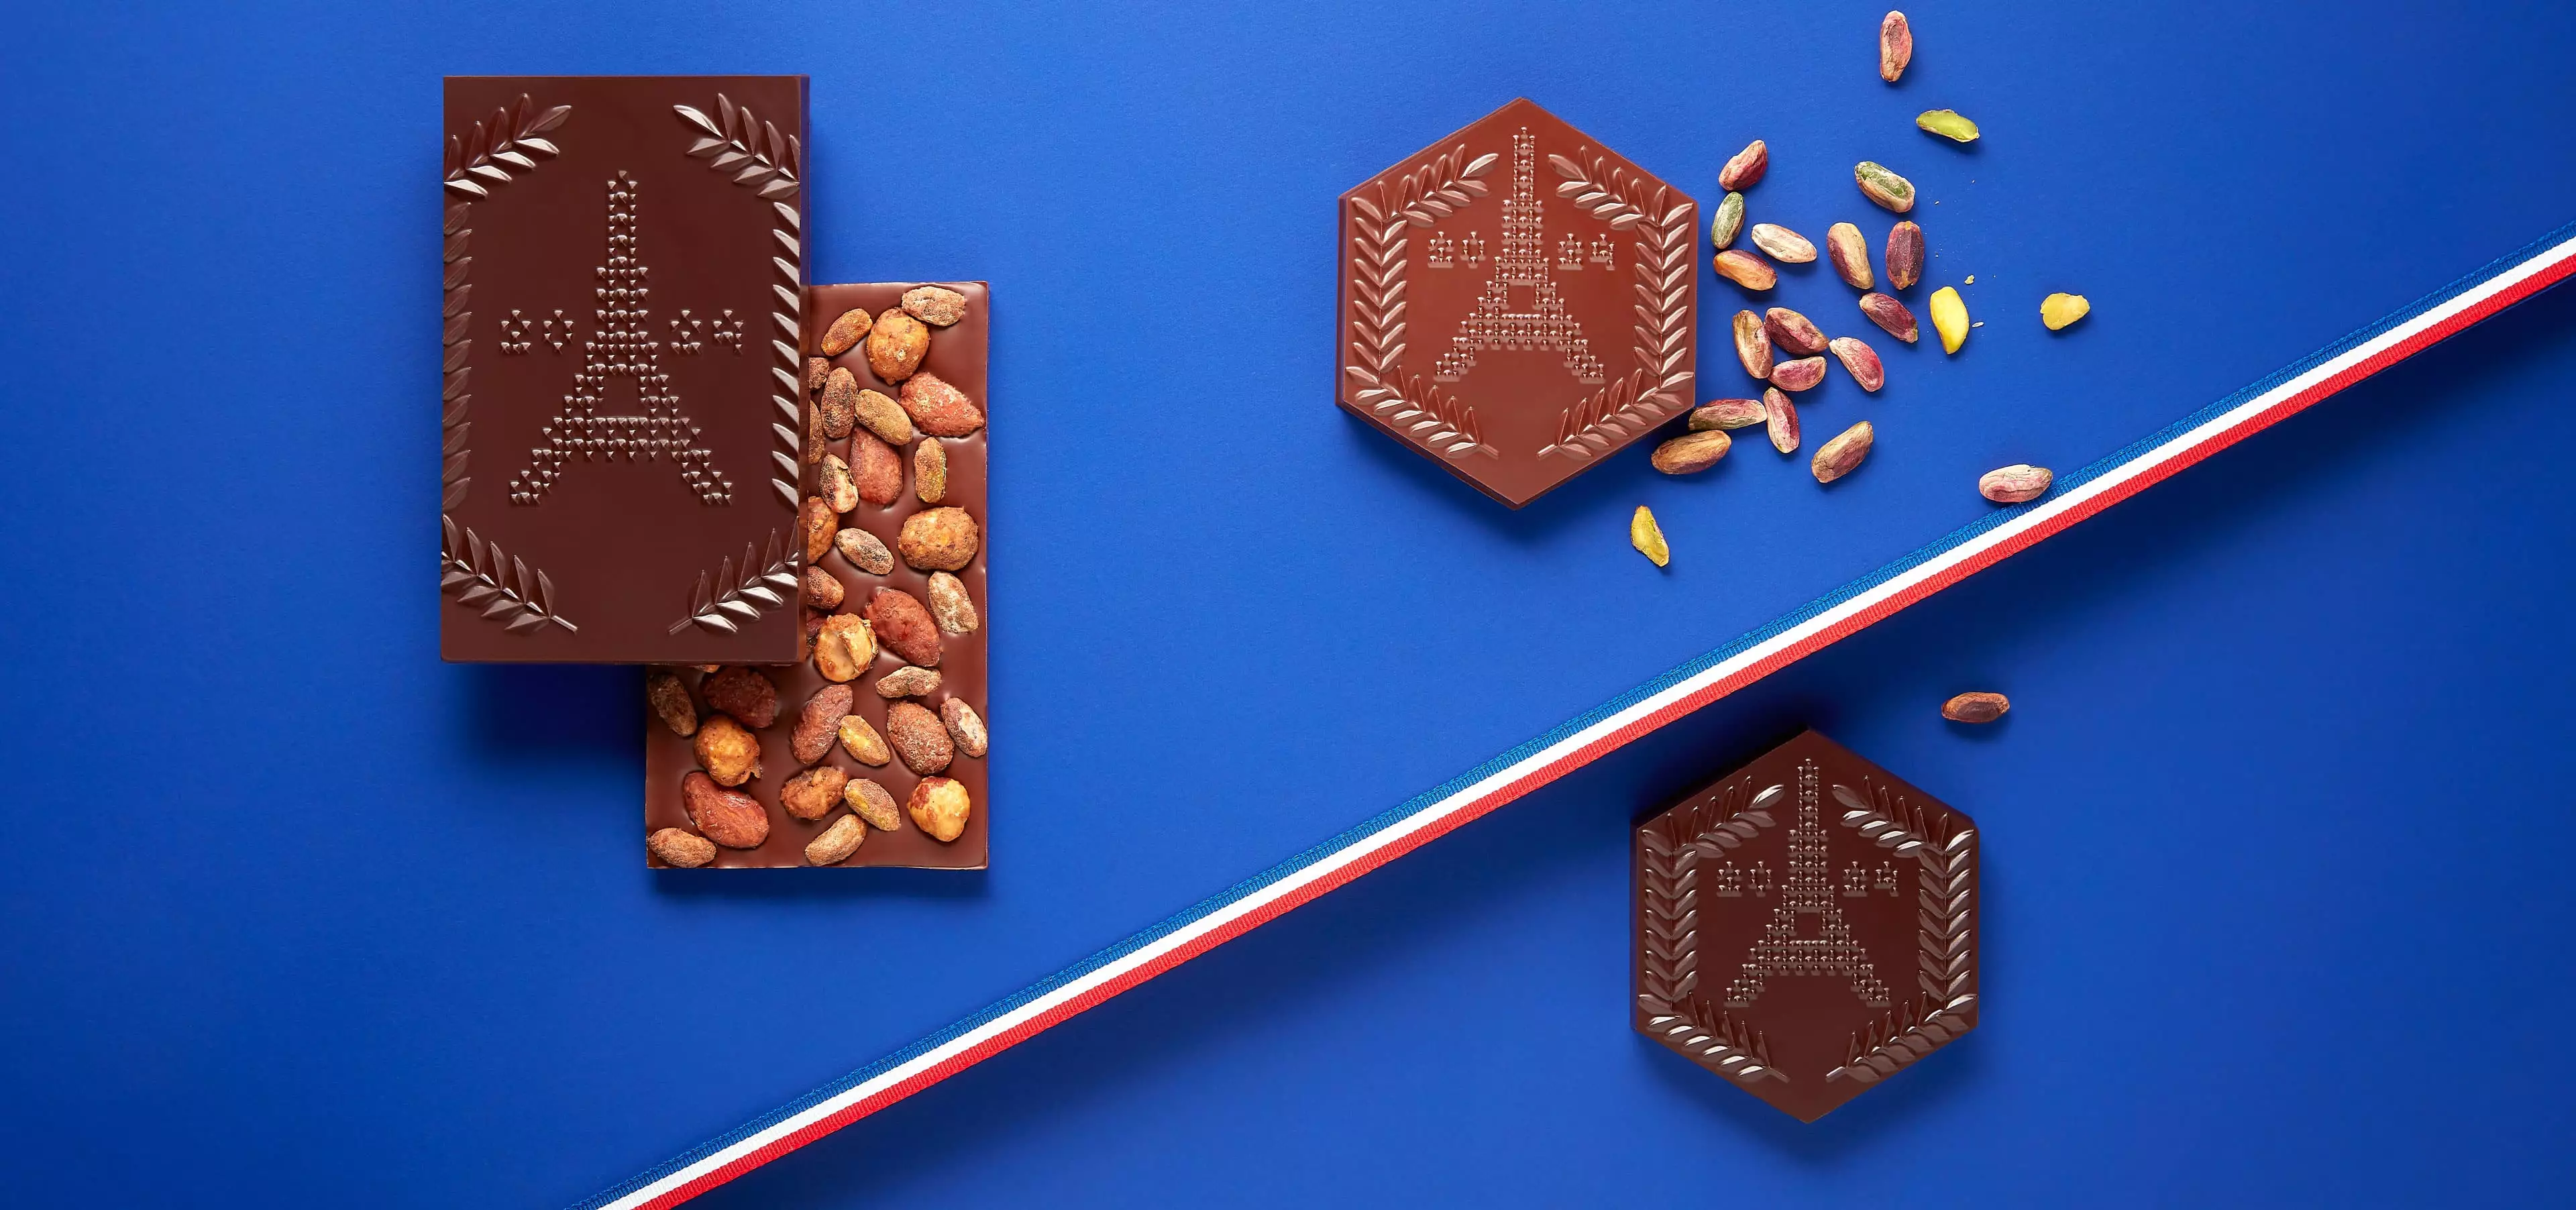 découvrez les créations exclusives de la Manufacture de Chocolat, mettant en lumière le monument le plus emblématique de Paris, tout en chocolat.